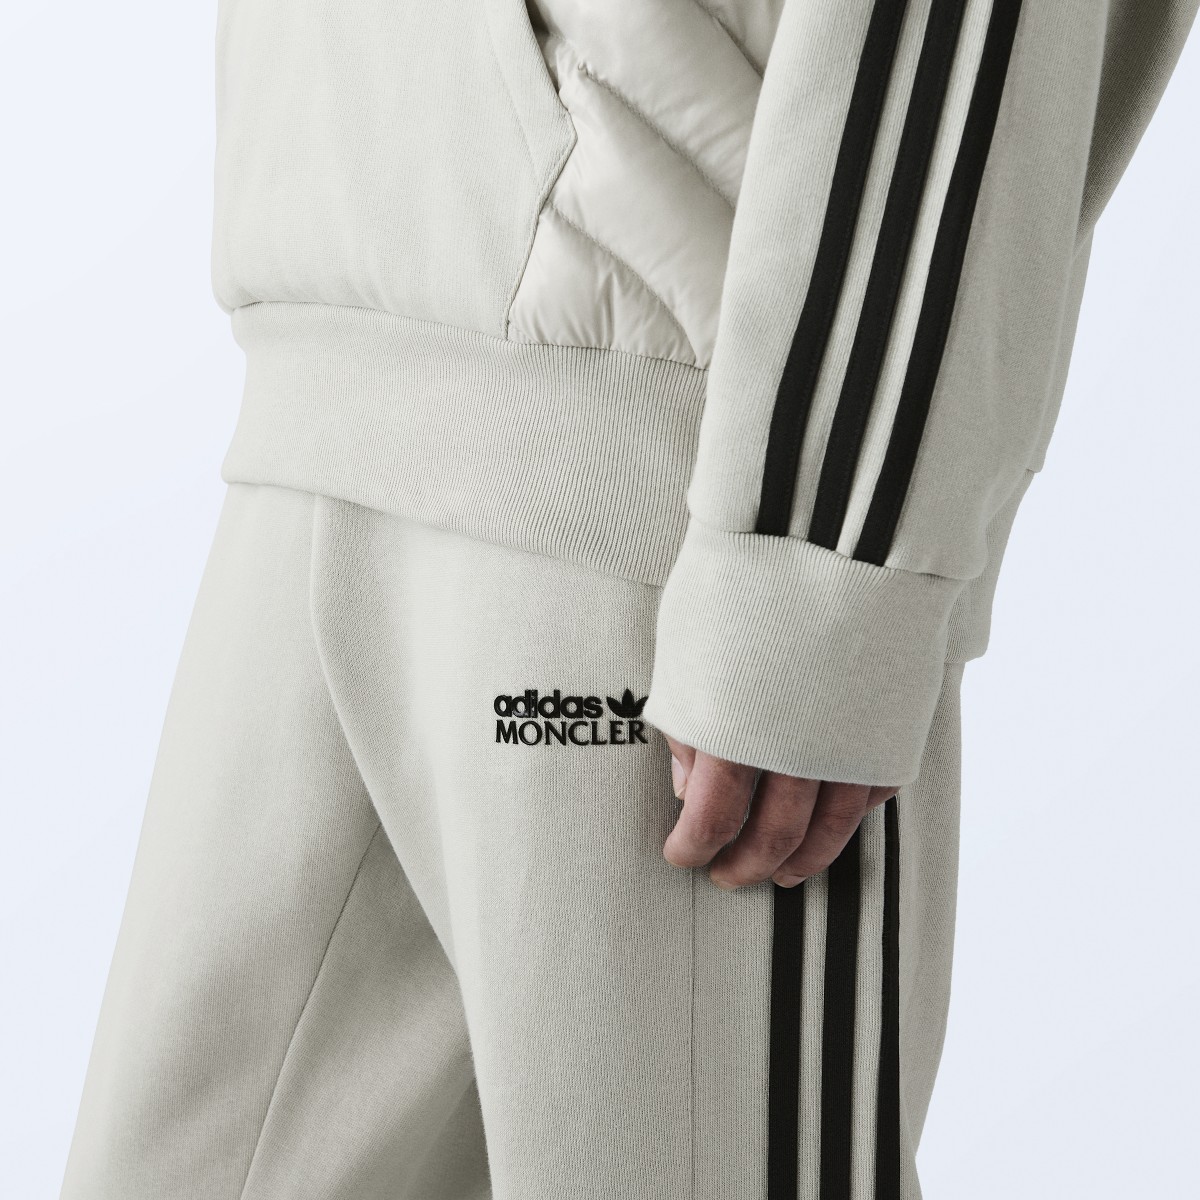 Adidas Moncler x adidas Originals Sweat Pants. 5